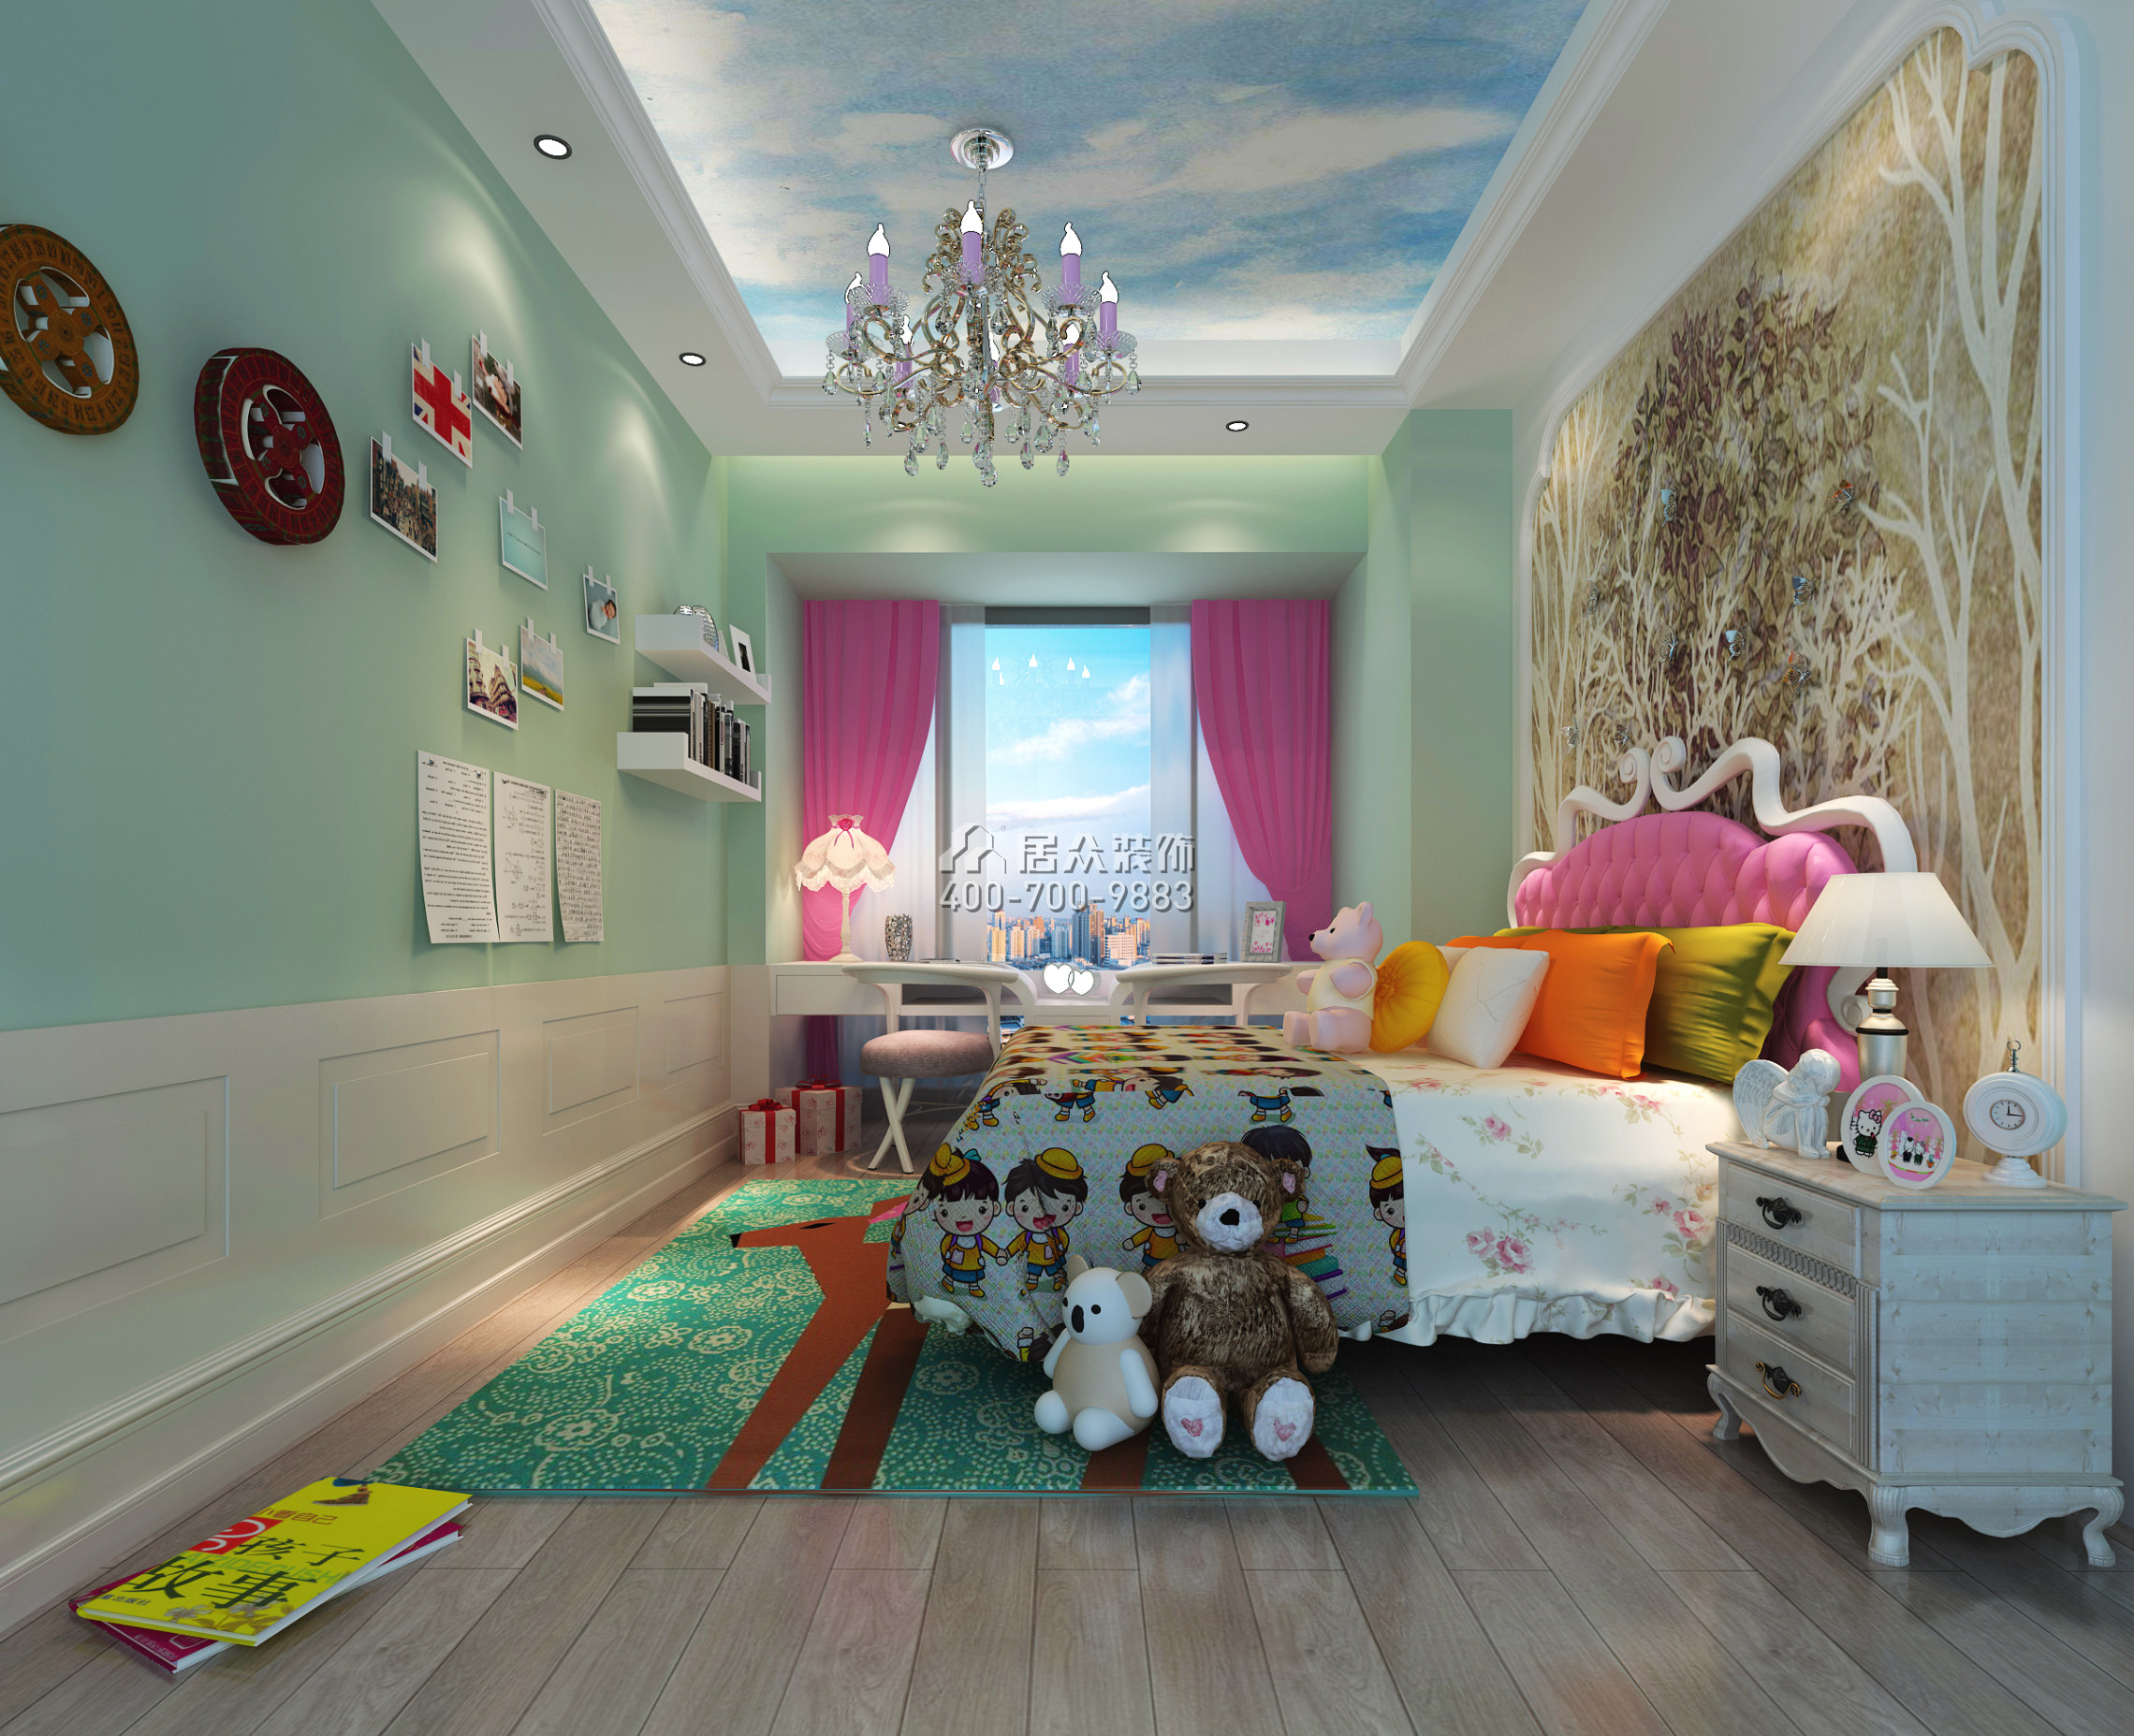 流金岁月200平方米欧式风格平层户型儿童房装修效果图